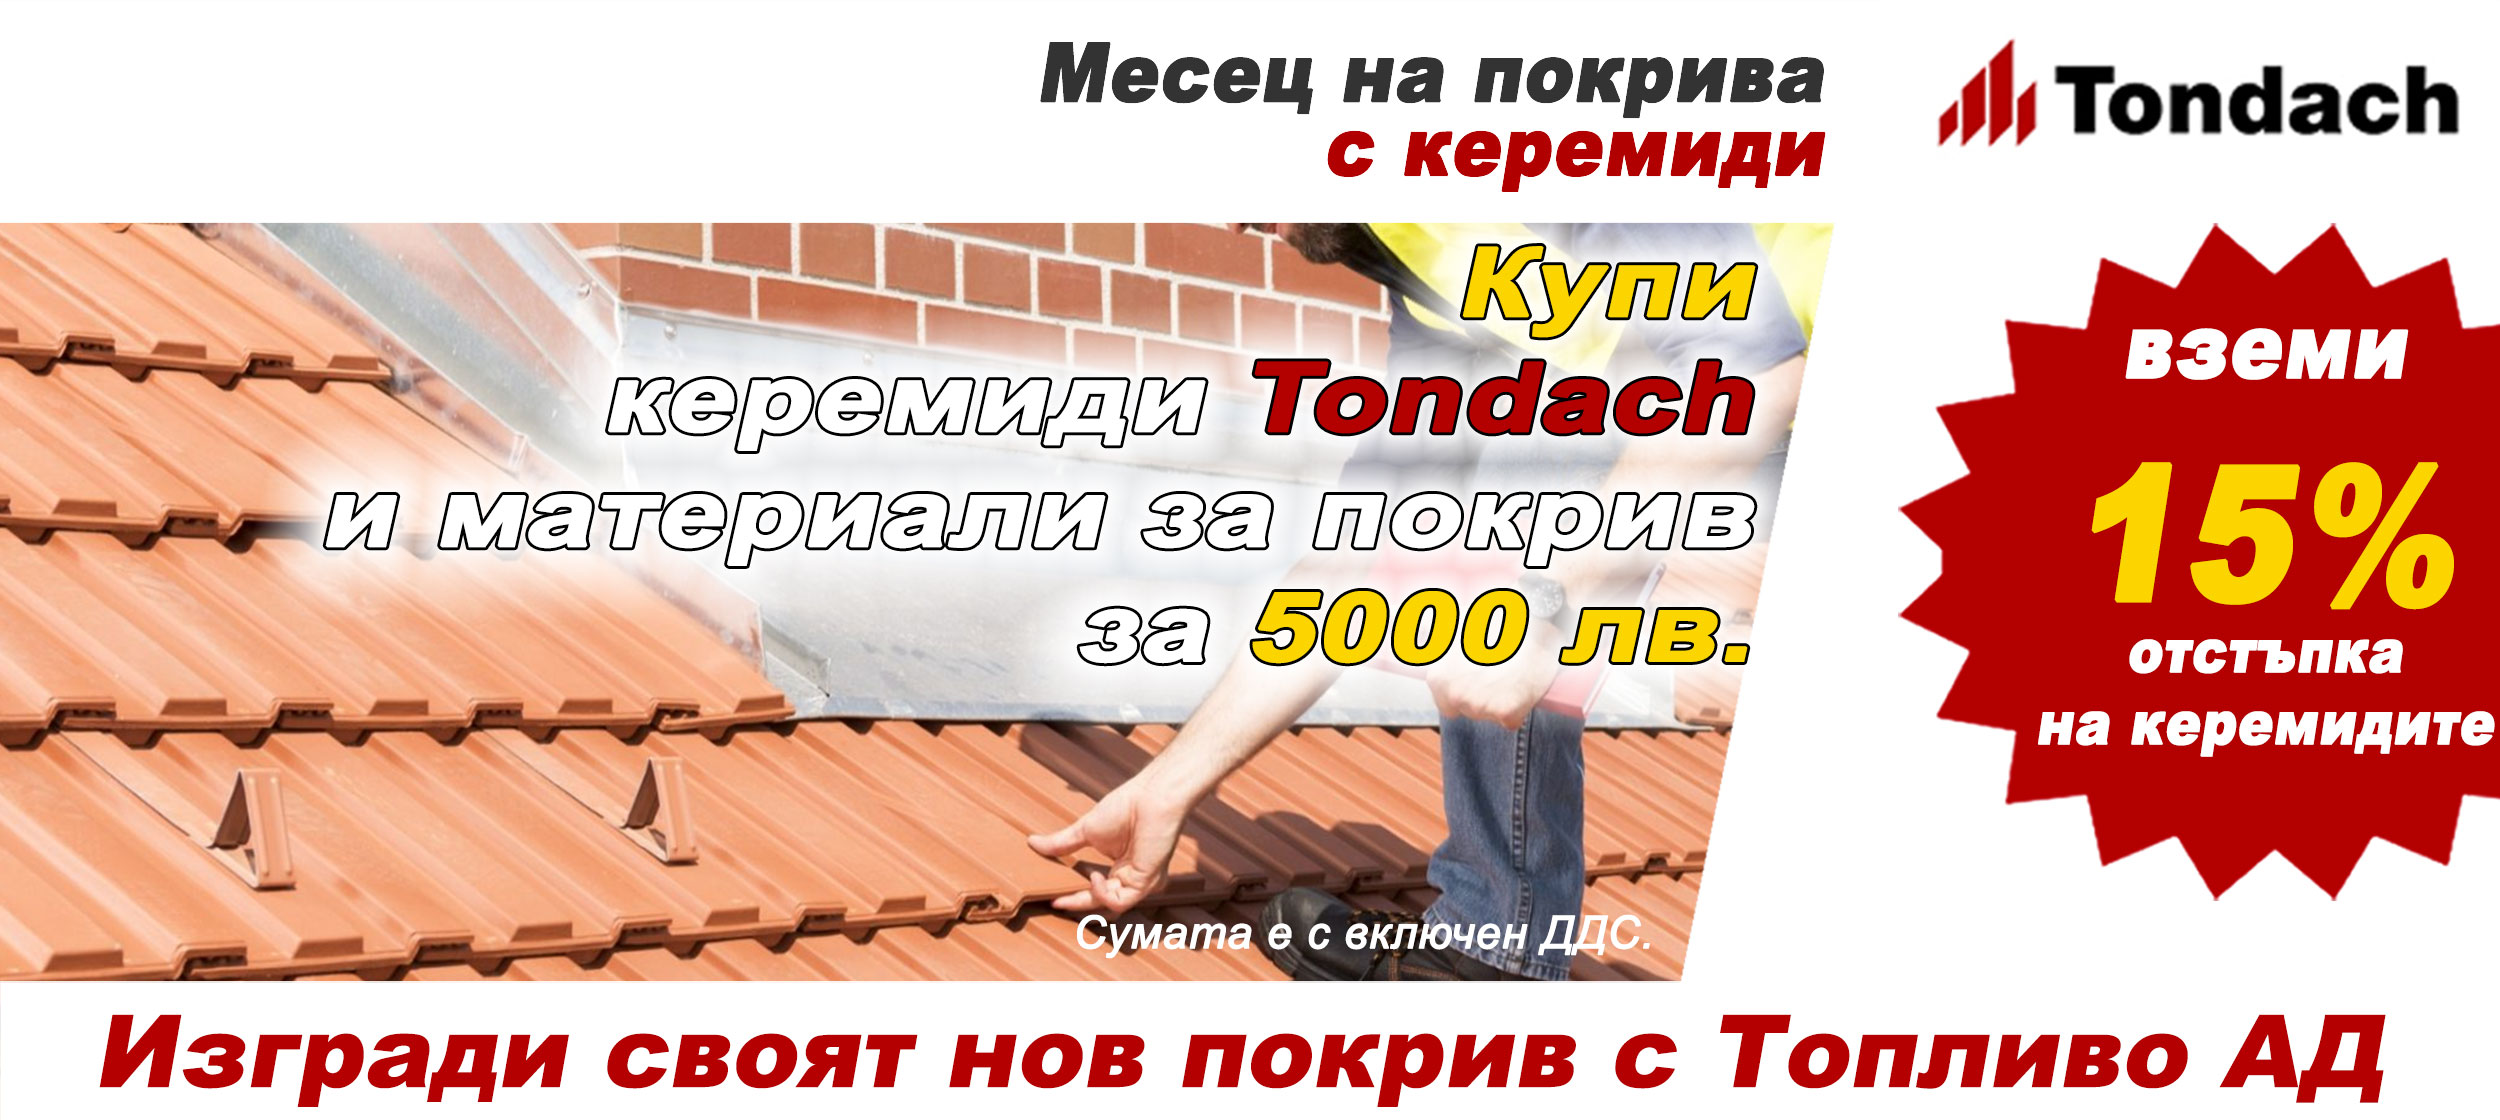 Месец на покрива -  15% отстъпка на керемиди TONDACH